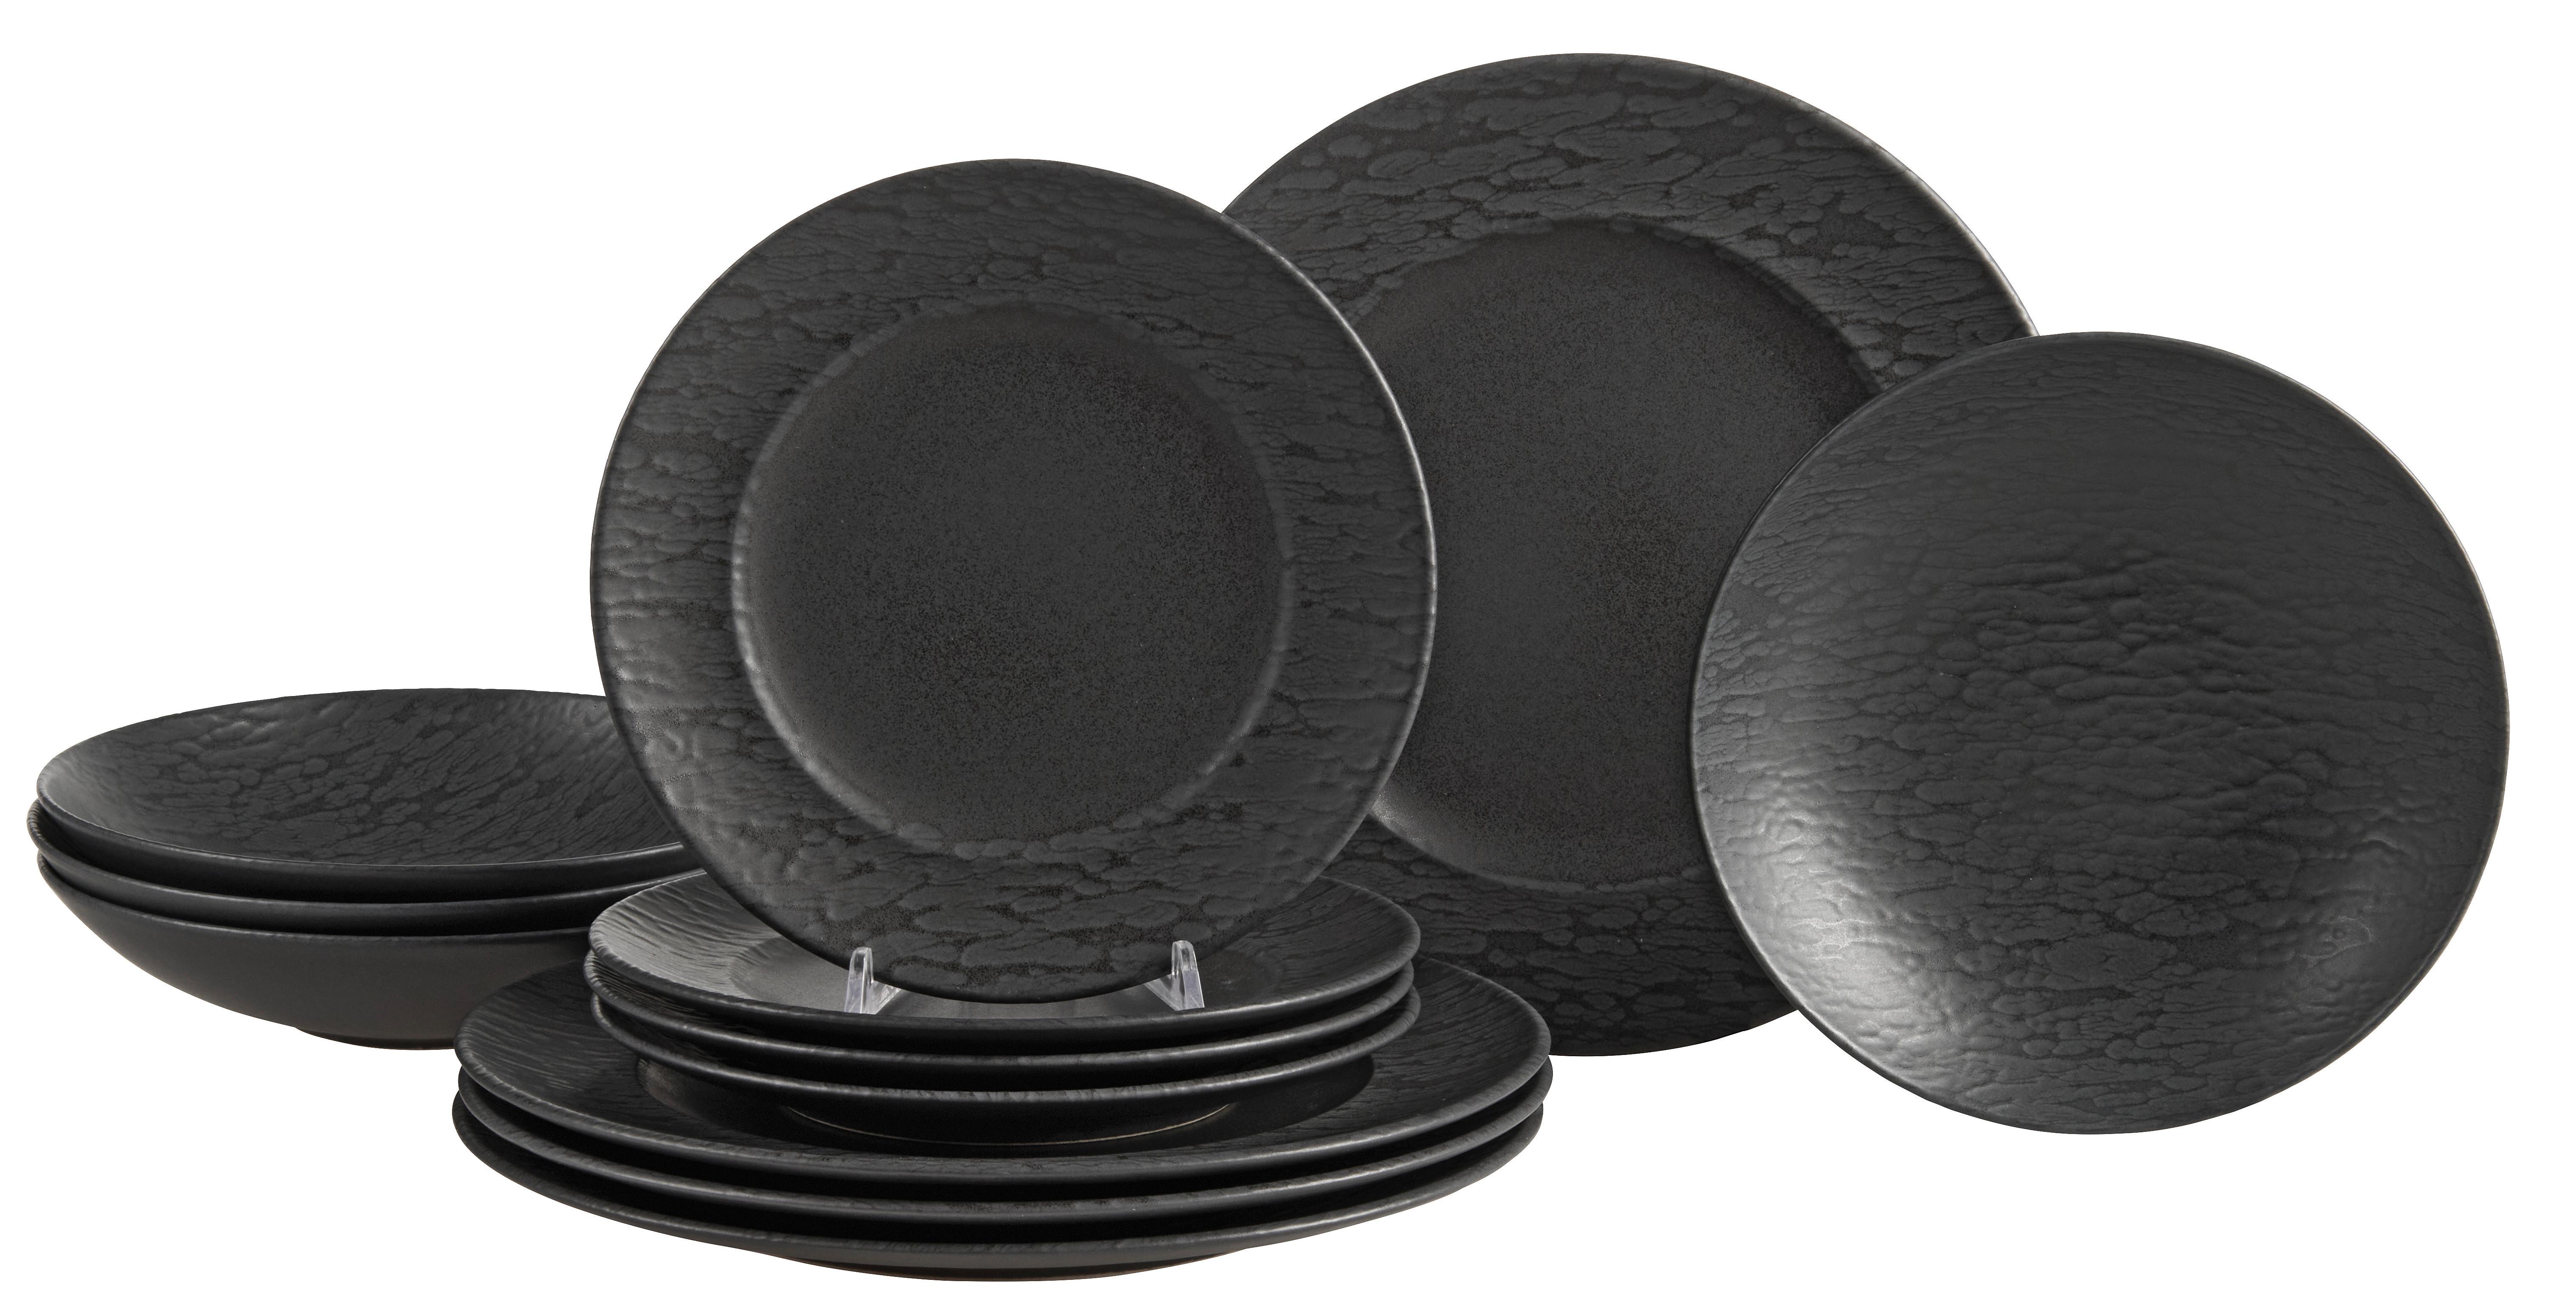 Jídelní Souprava Black Vintage, 12dílná - černá, Moderní, keramika (1/1/1cm) - Premium Living